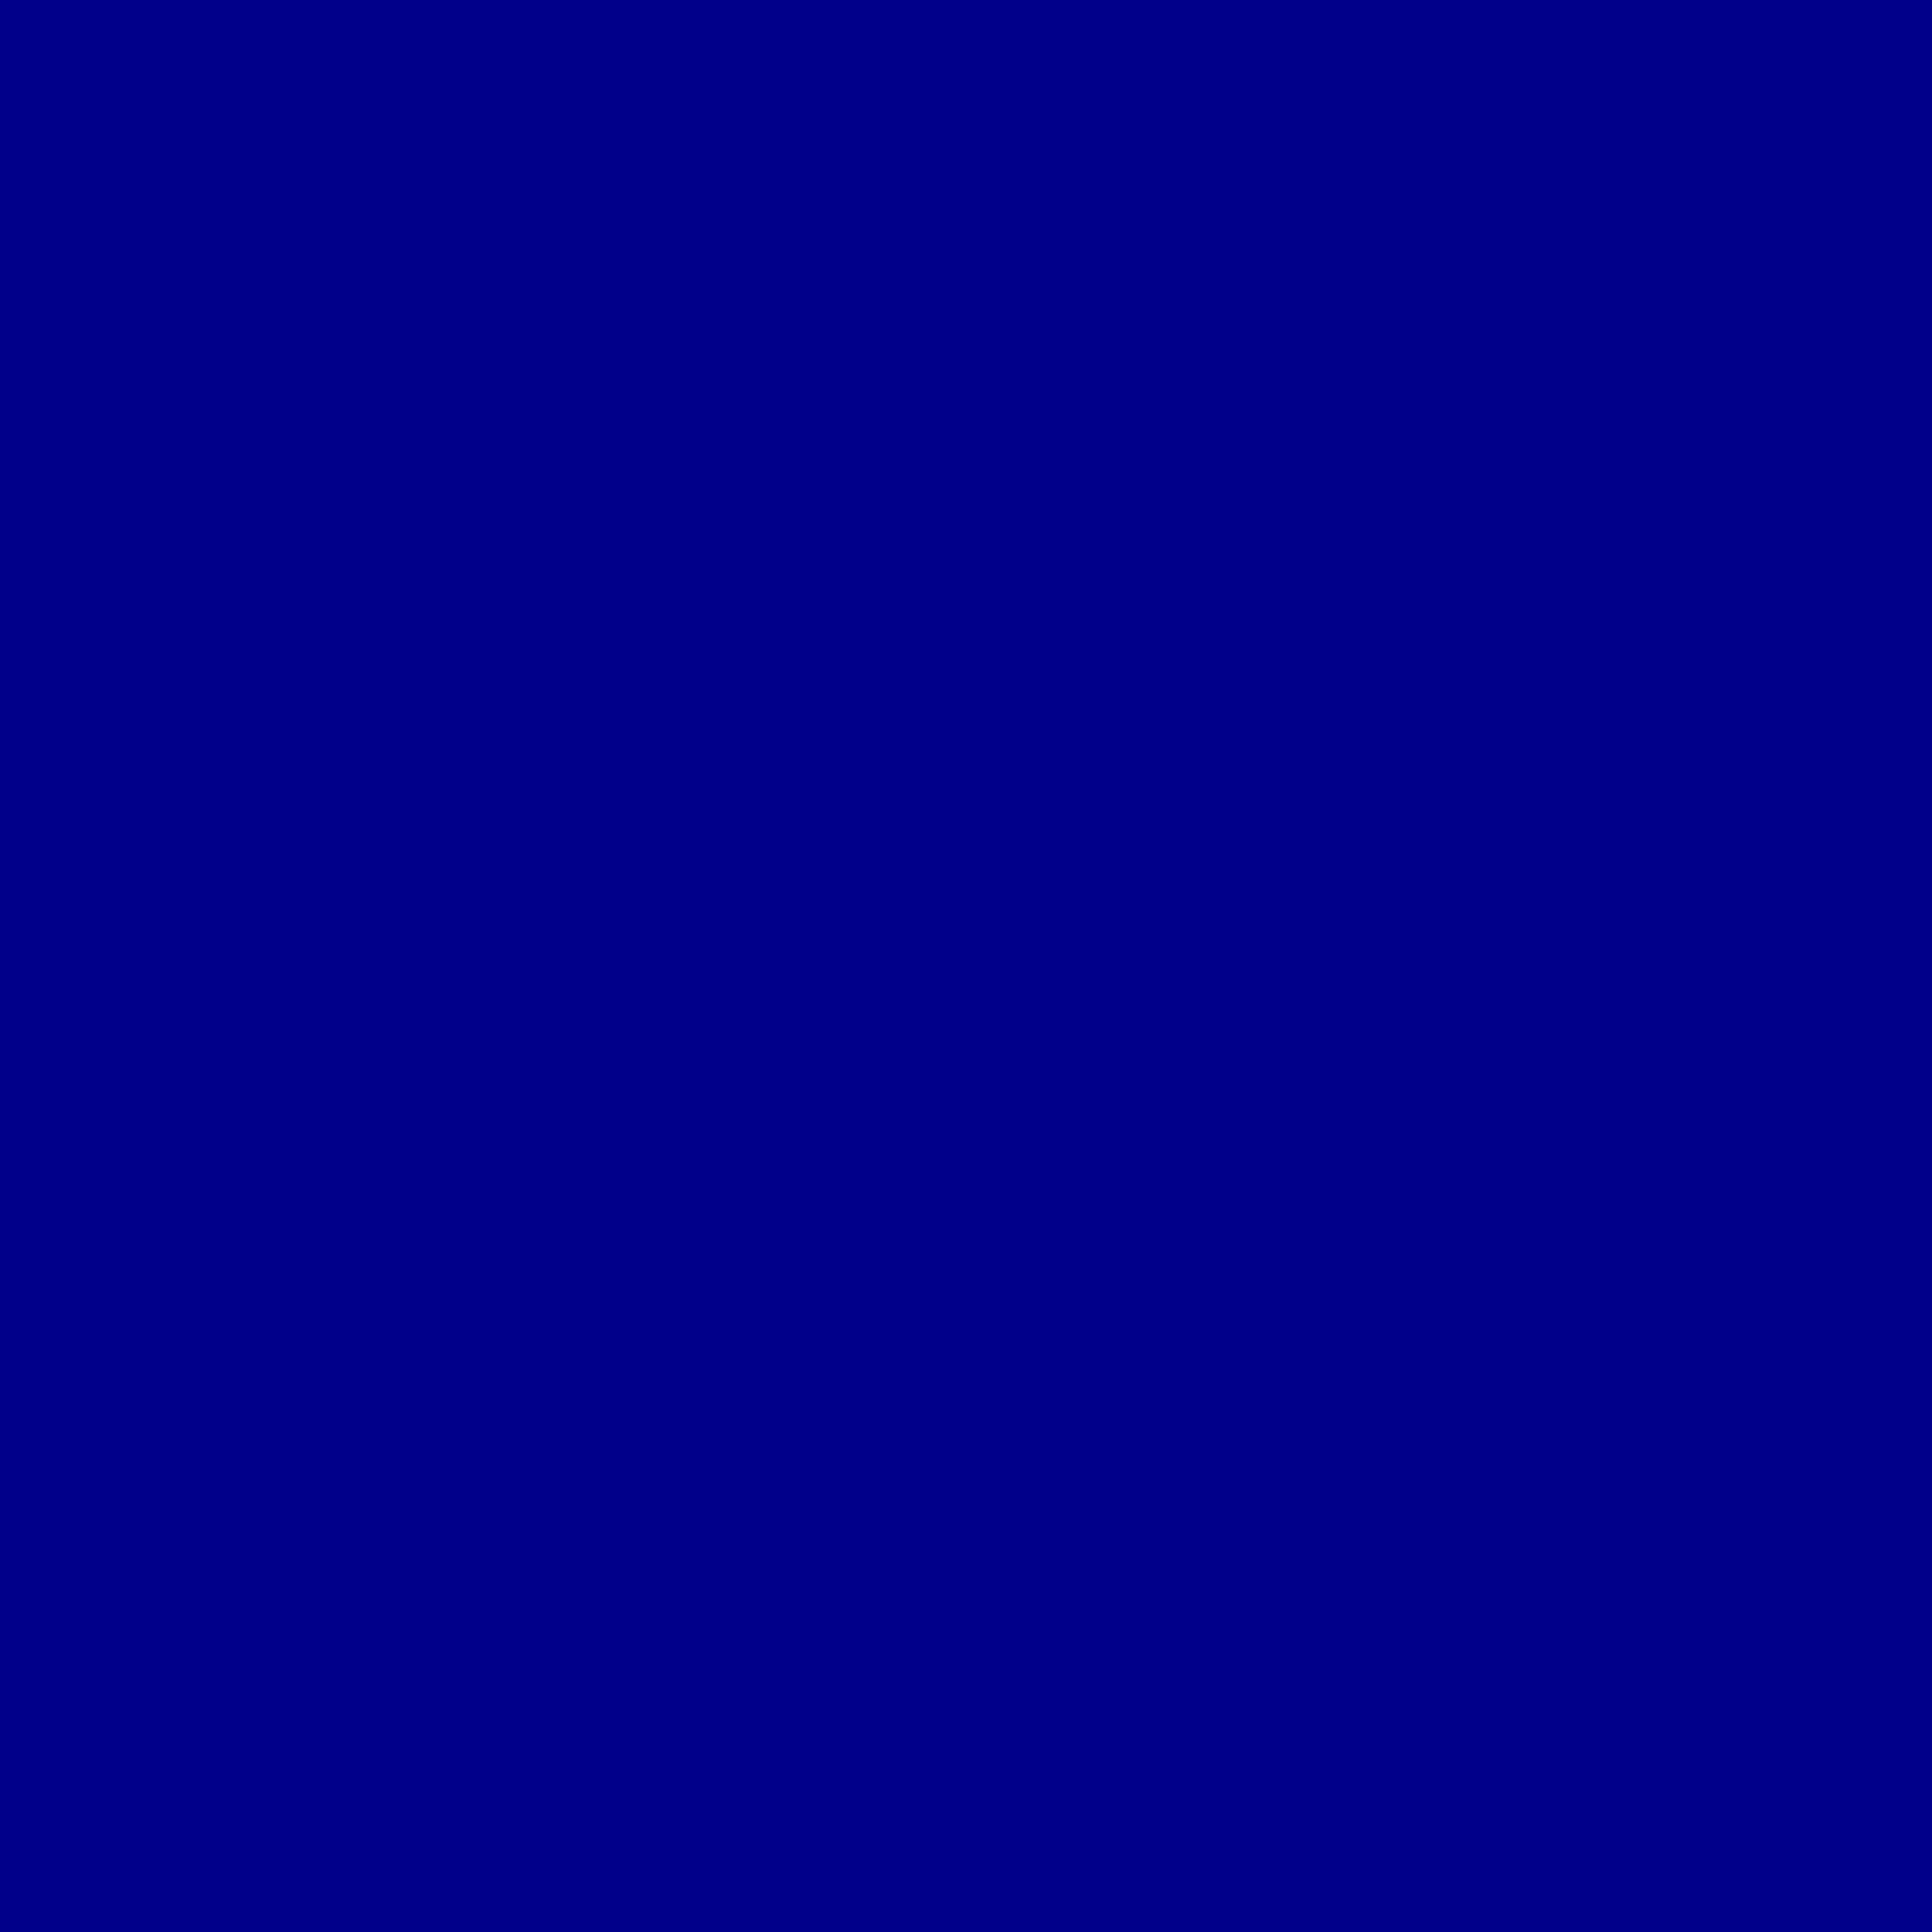 dunkelblaue tapete,kobaltblau,blau,violett,elektrisches blau,schwarz